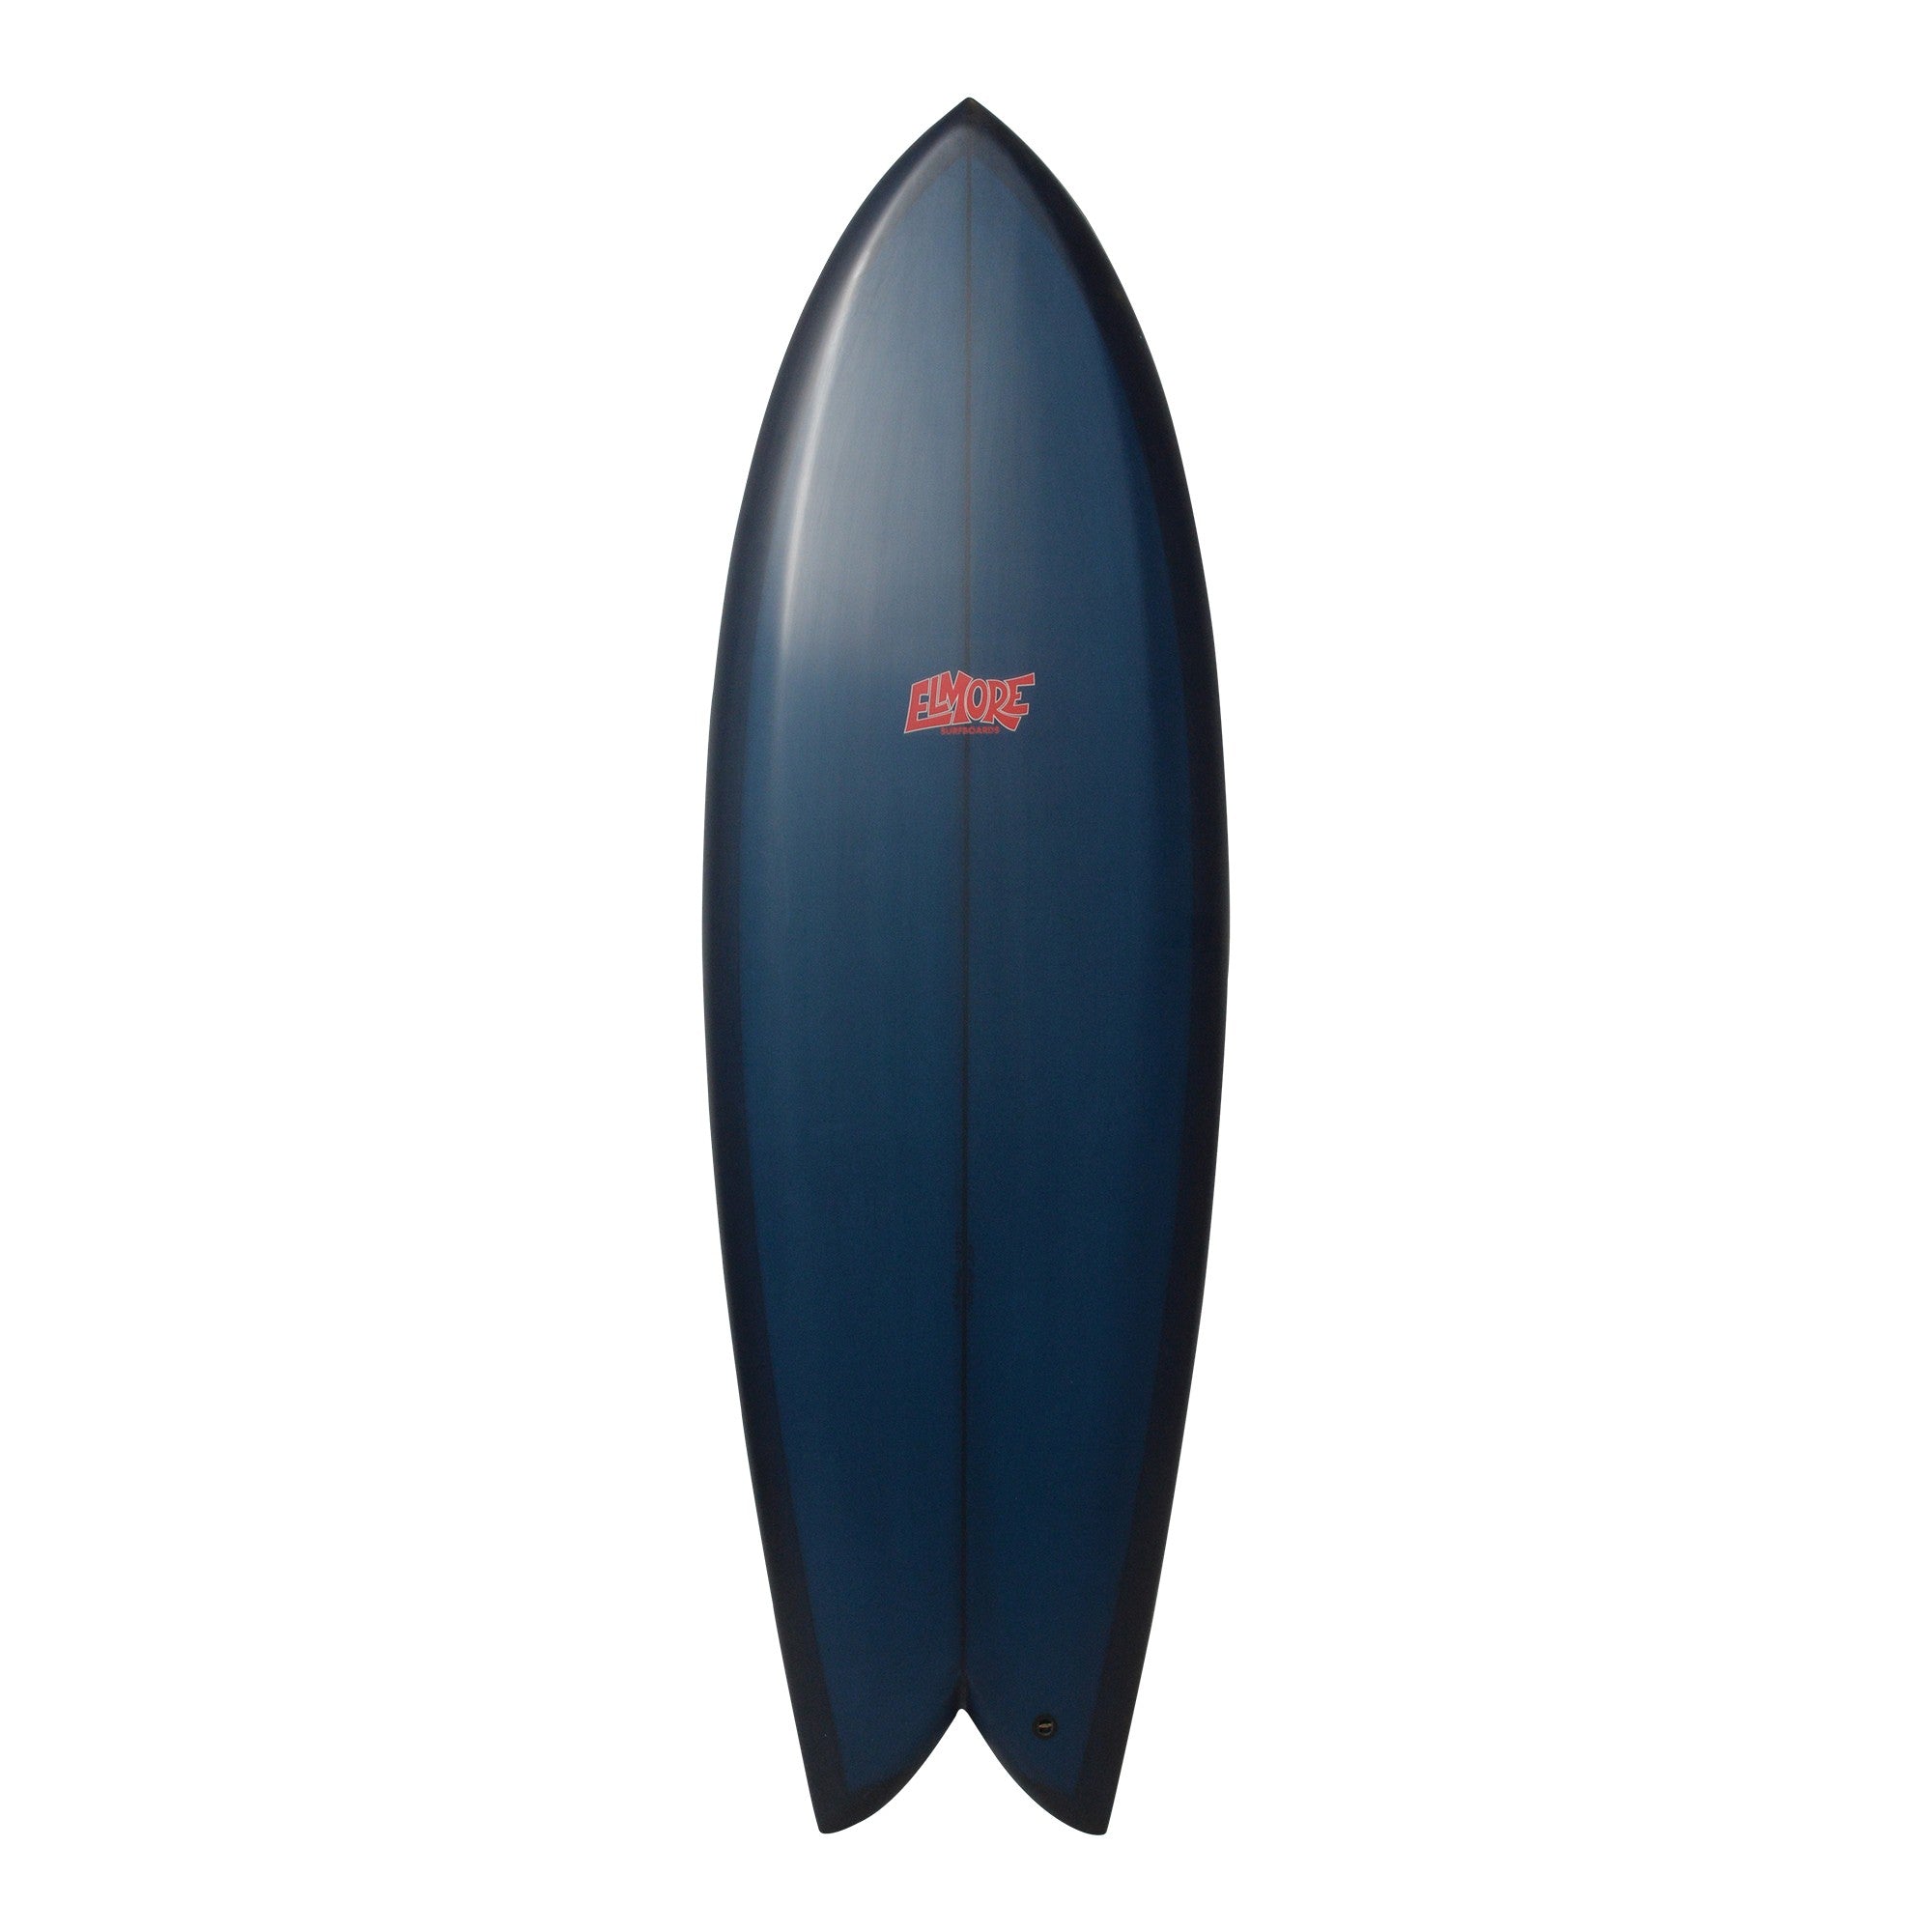 Tablas de surf ELMORE - Fish 5'8 (PU) Vidrio con aletas - Azul marino